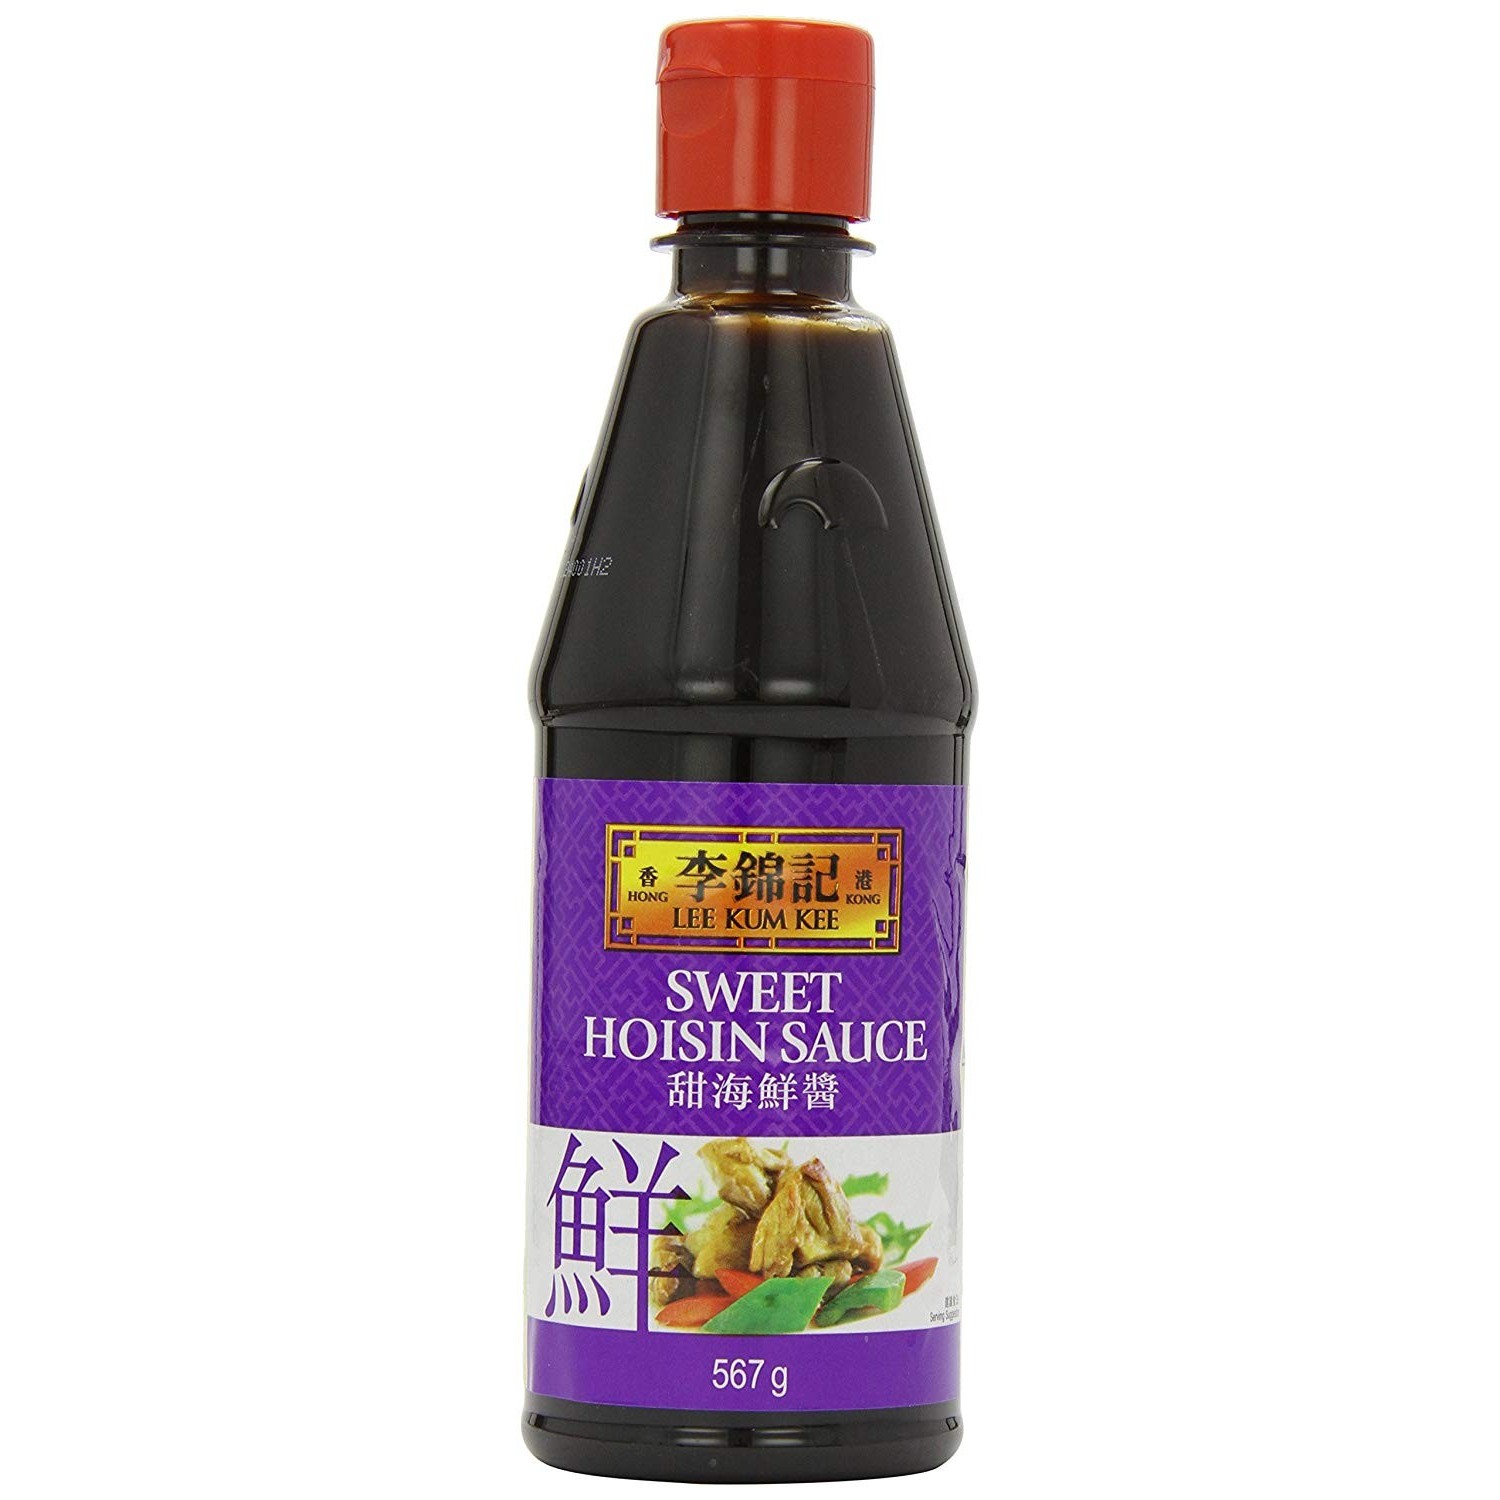 L1 - LKK Hoisin Sweet Hoisin sauce 567g - Hikifood